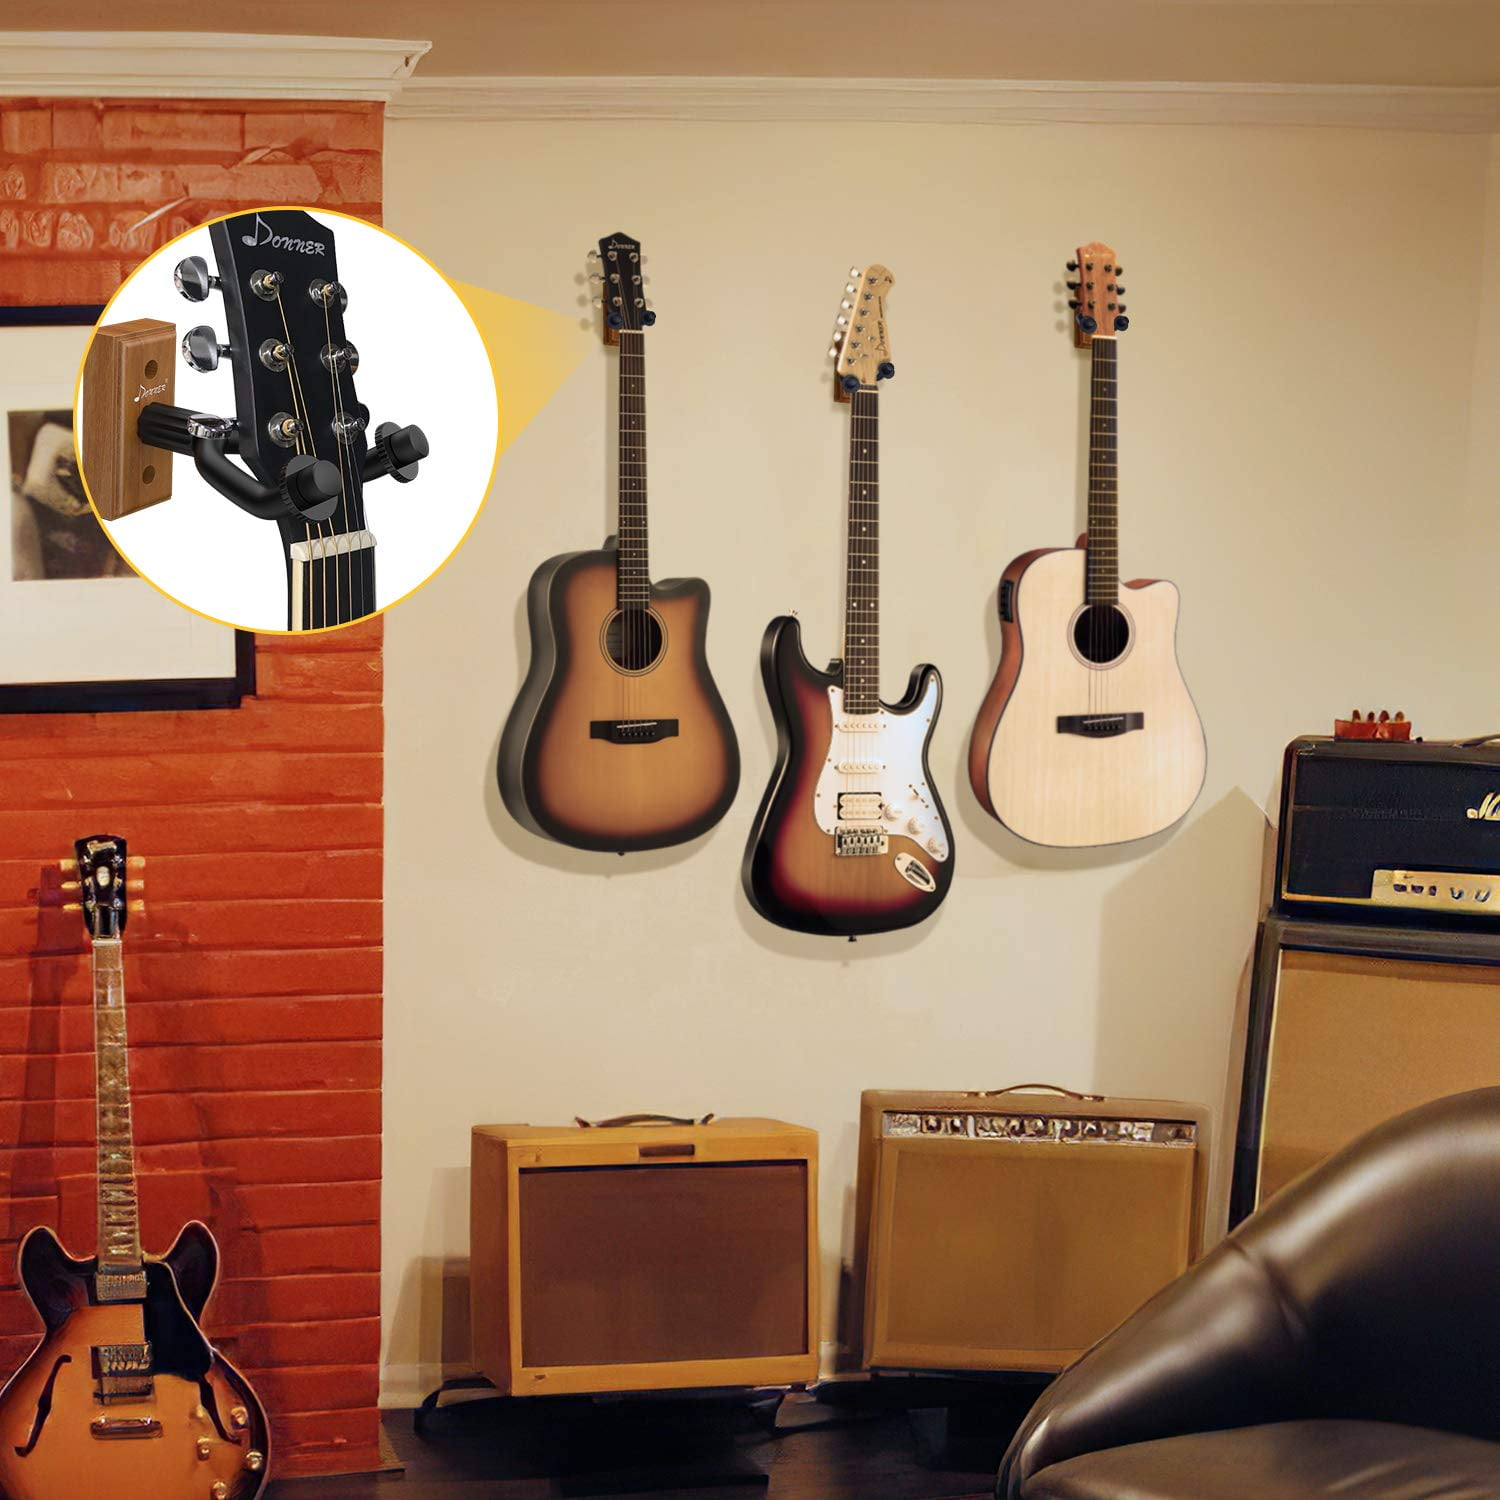 Donner Guitar Wall Mount Hanger 3-Pack, Black Walnut Guitar Wall